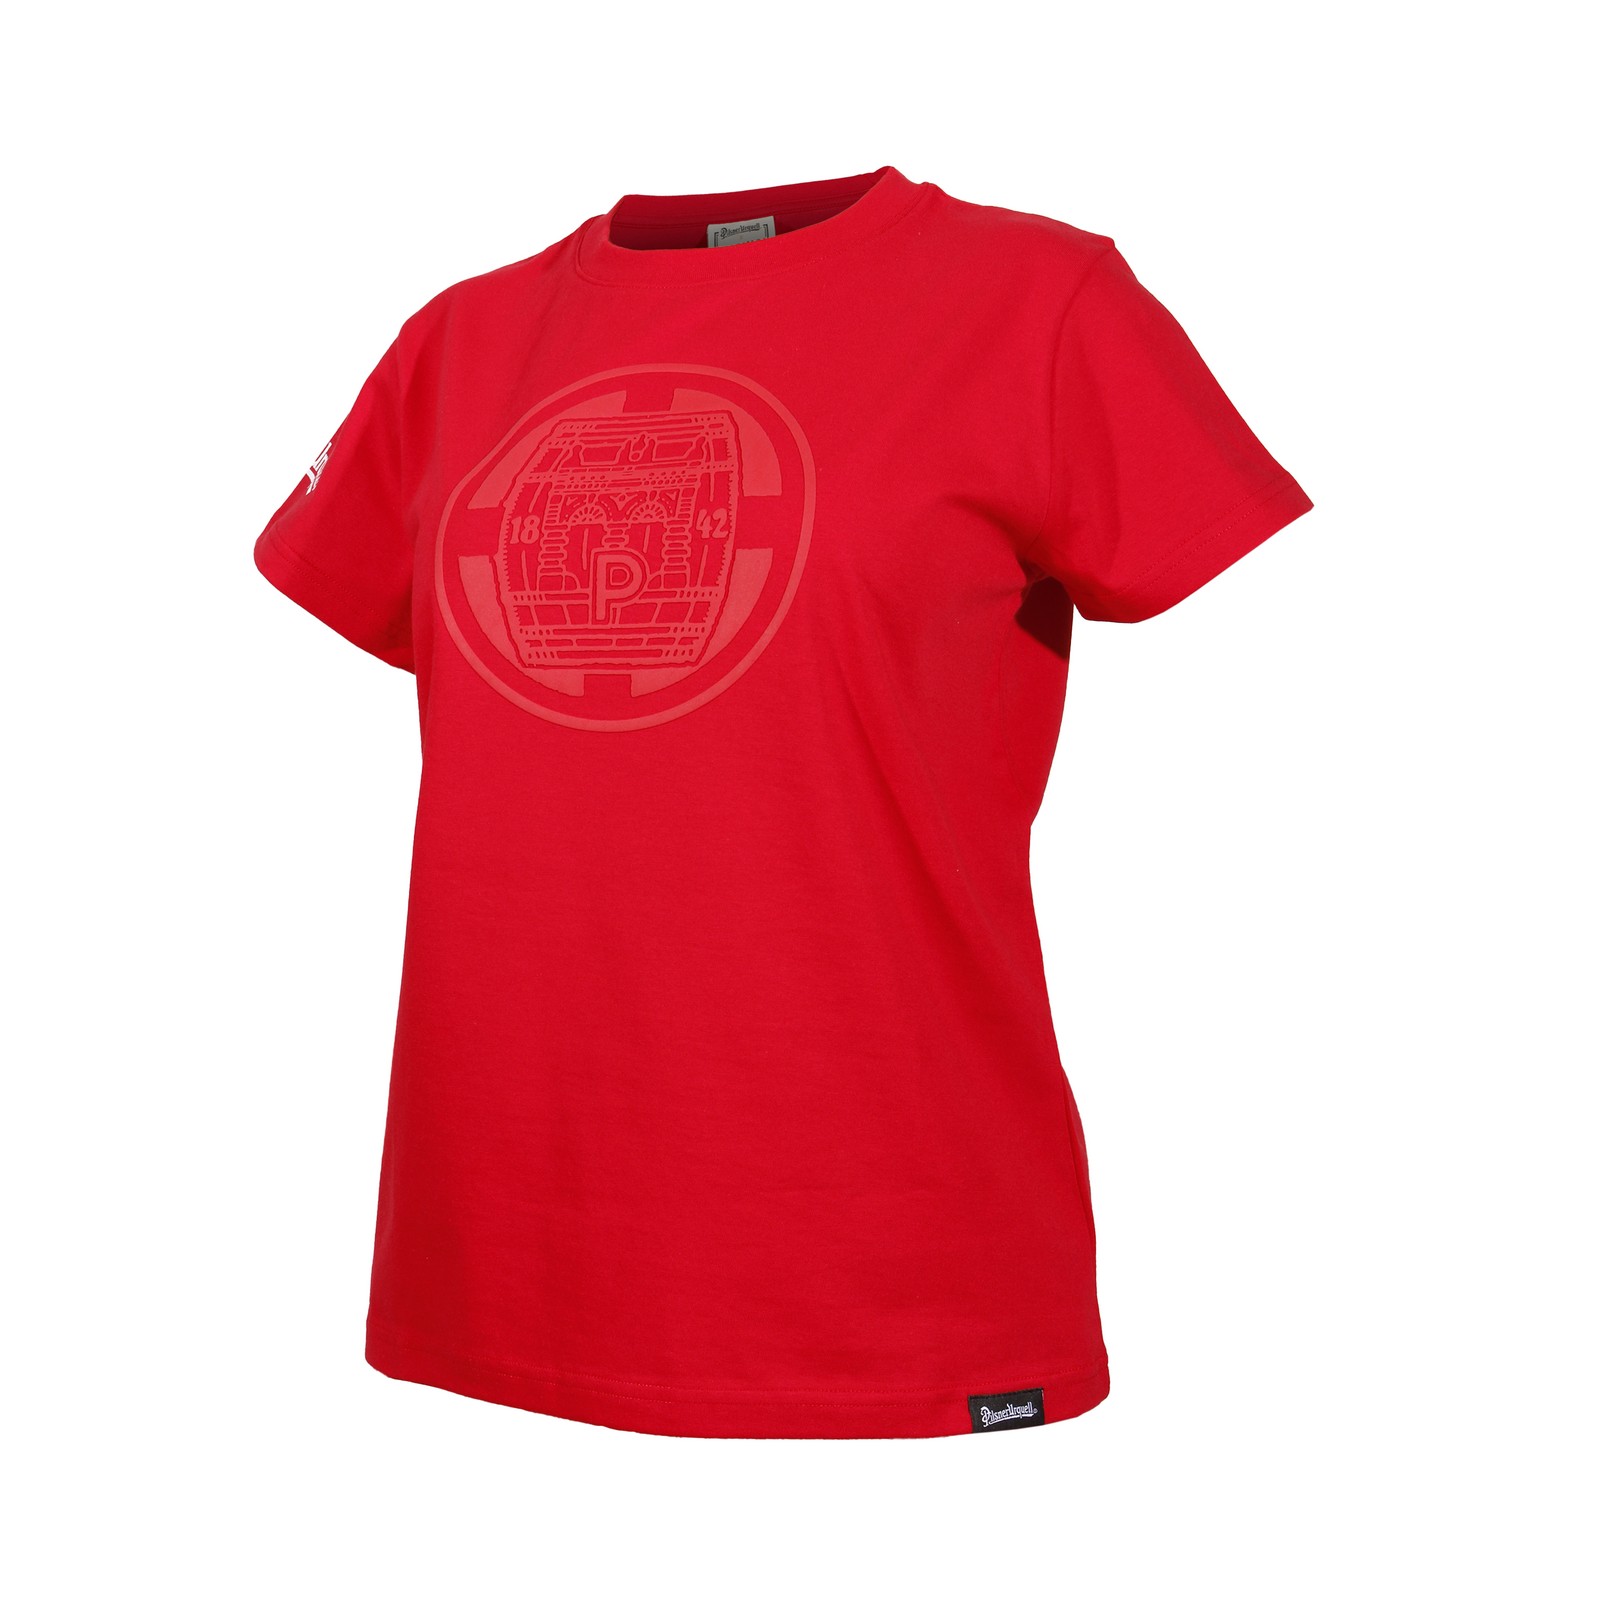 Women's T-shirt Pilsner Urquell barrel red